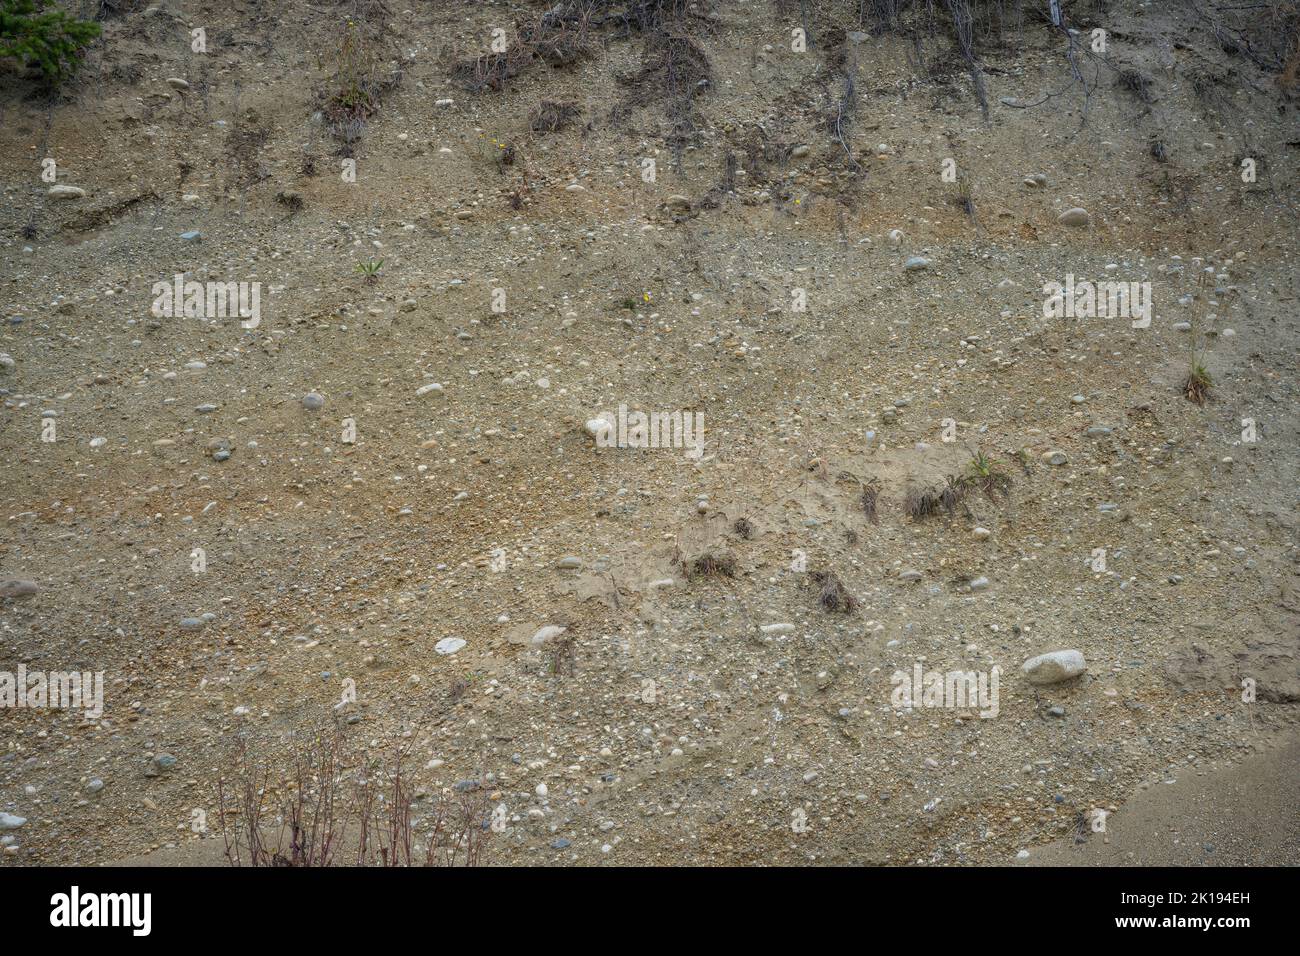 Particolare della scogliera (spiaggia sopraelevata) sopra la spiaggia rocciosa del Camano Island state Park sull'Isola di Camano, Island County, Washington state, USA. Foto Stock